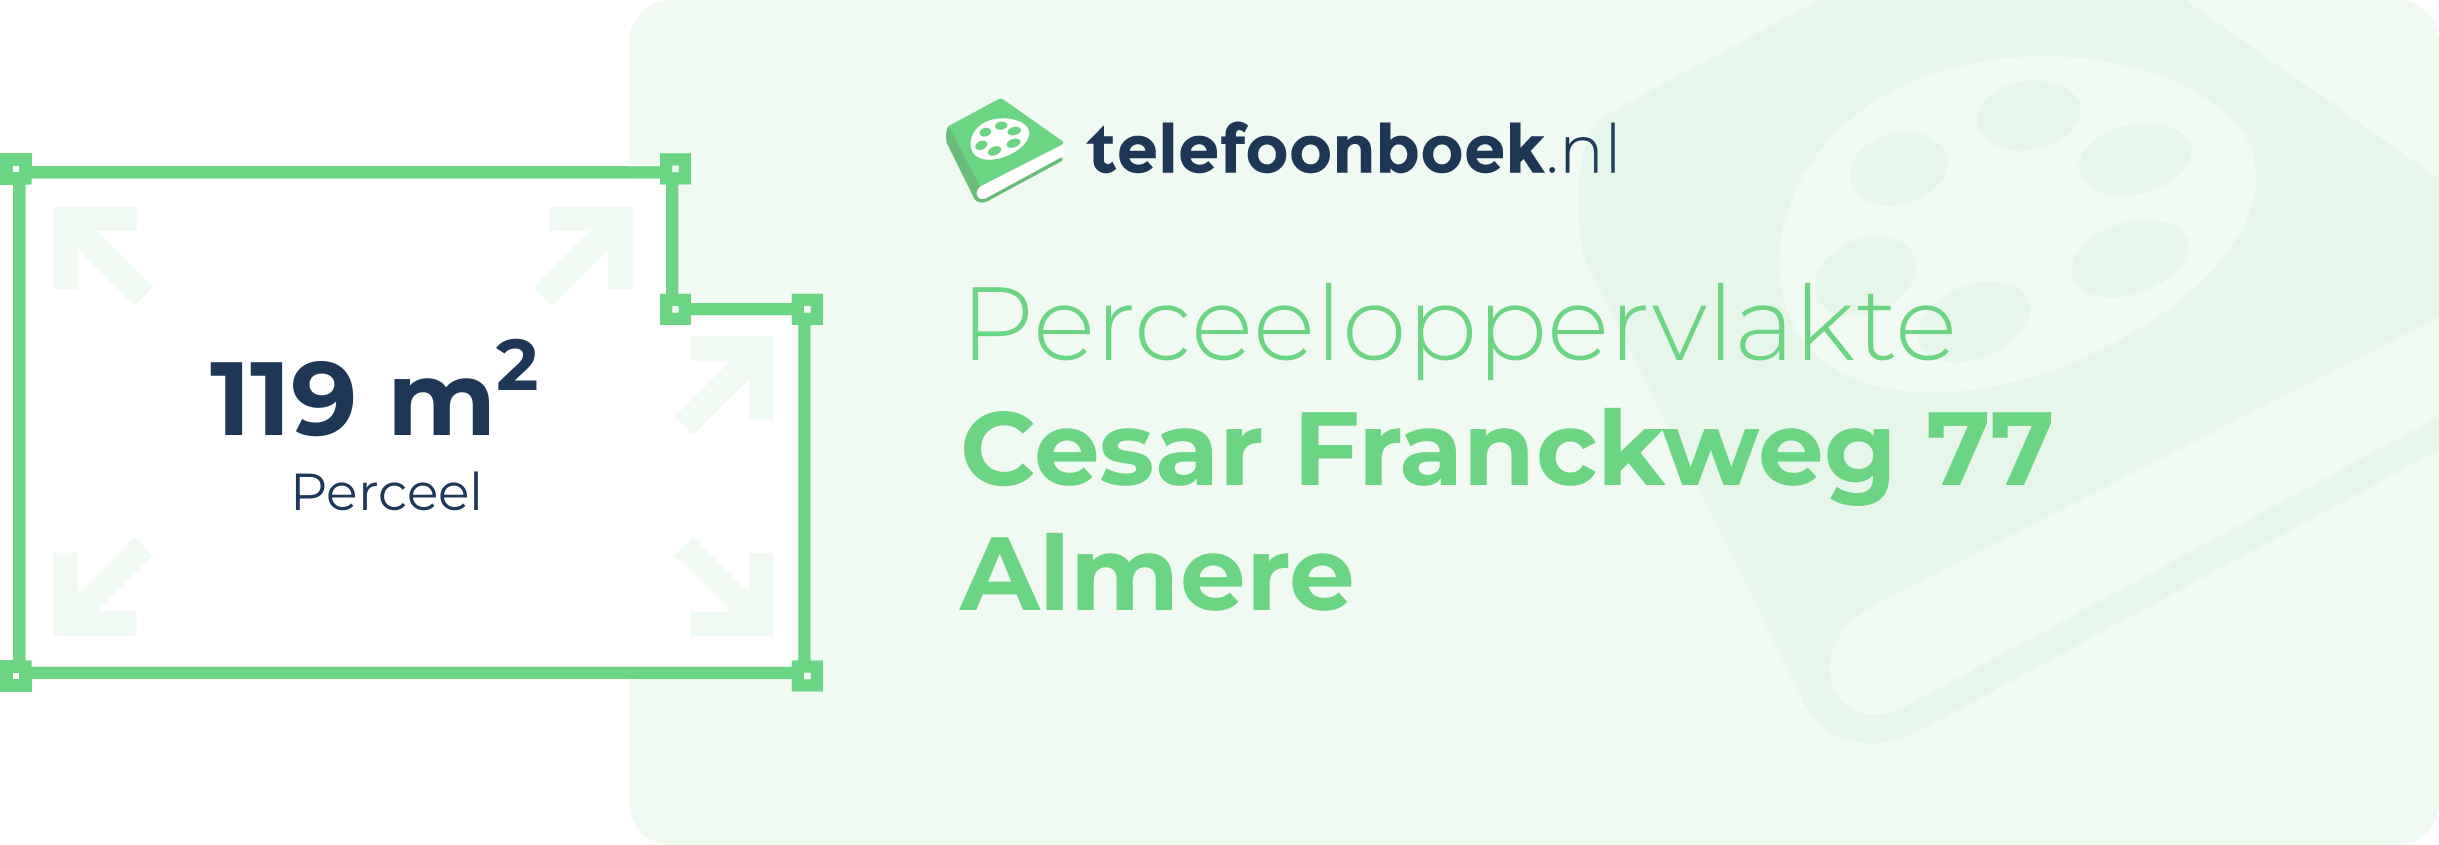 Perceeloppervlakte Cesar Franckweg 77 Almere